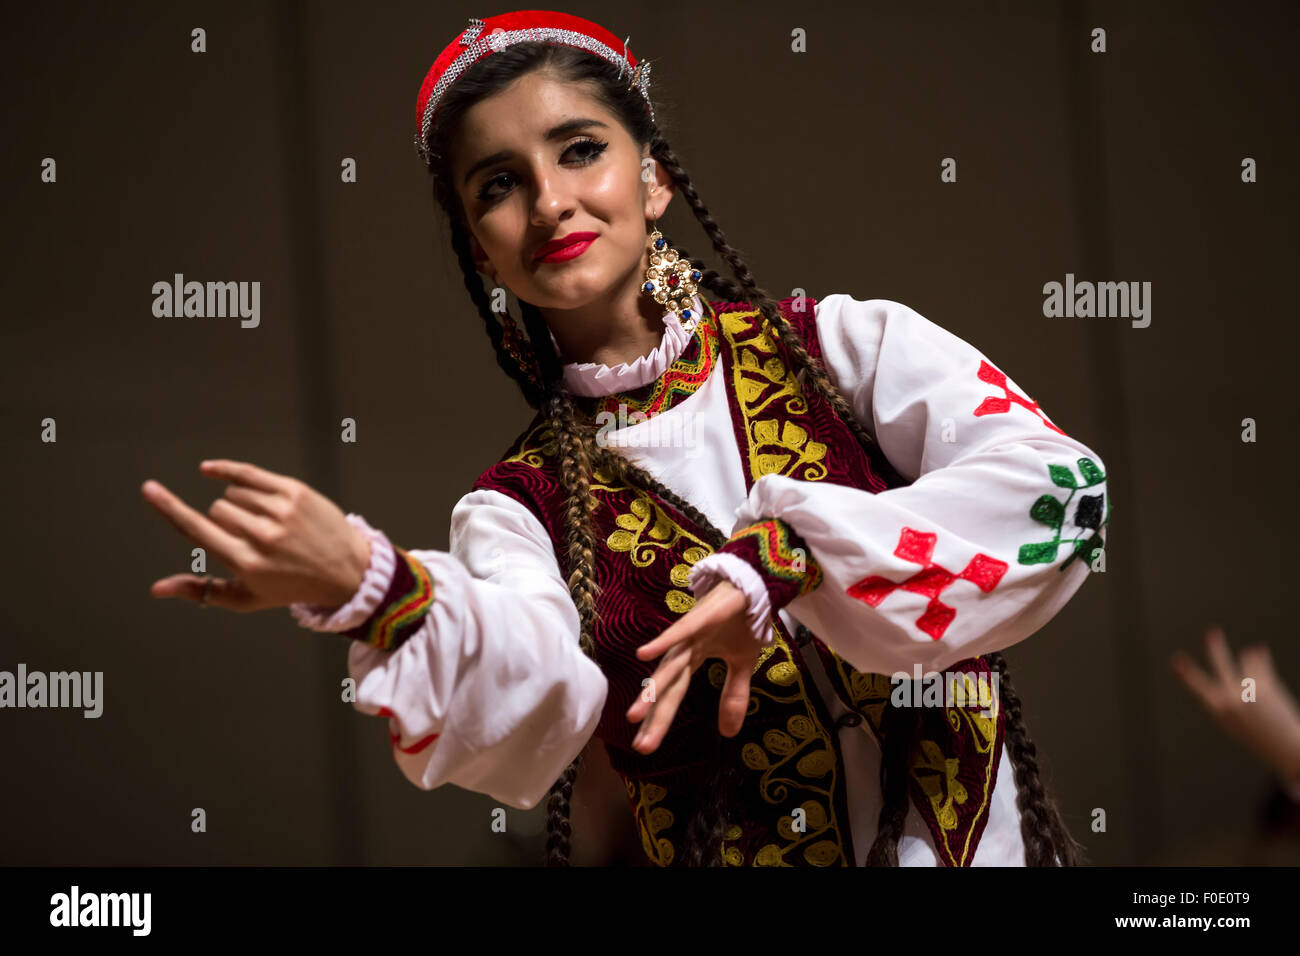 Moscou, Russie. 12 août, 2015. Maîtres talentueux des Arts a présenté la culture tadjik nationale du Tadjikistan sur la culture dans les villes russes Banque D'Images